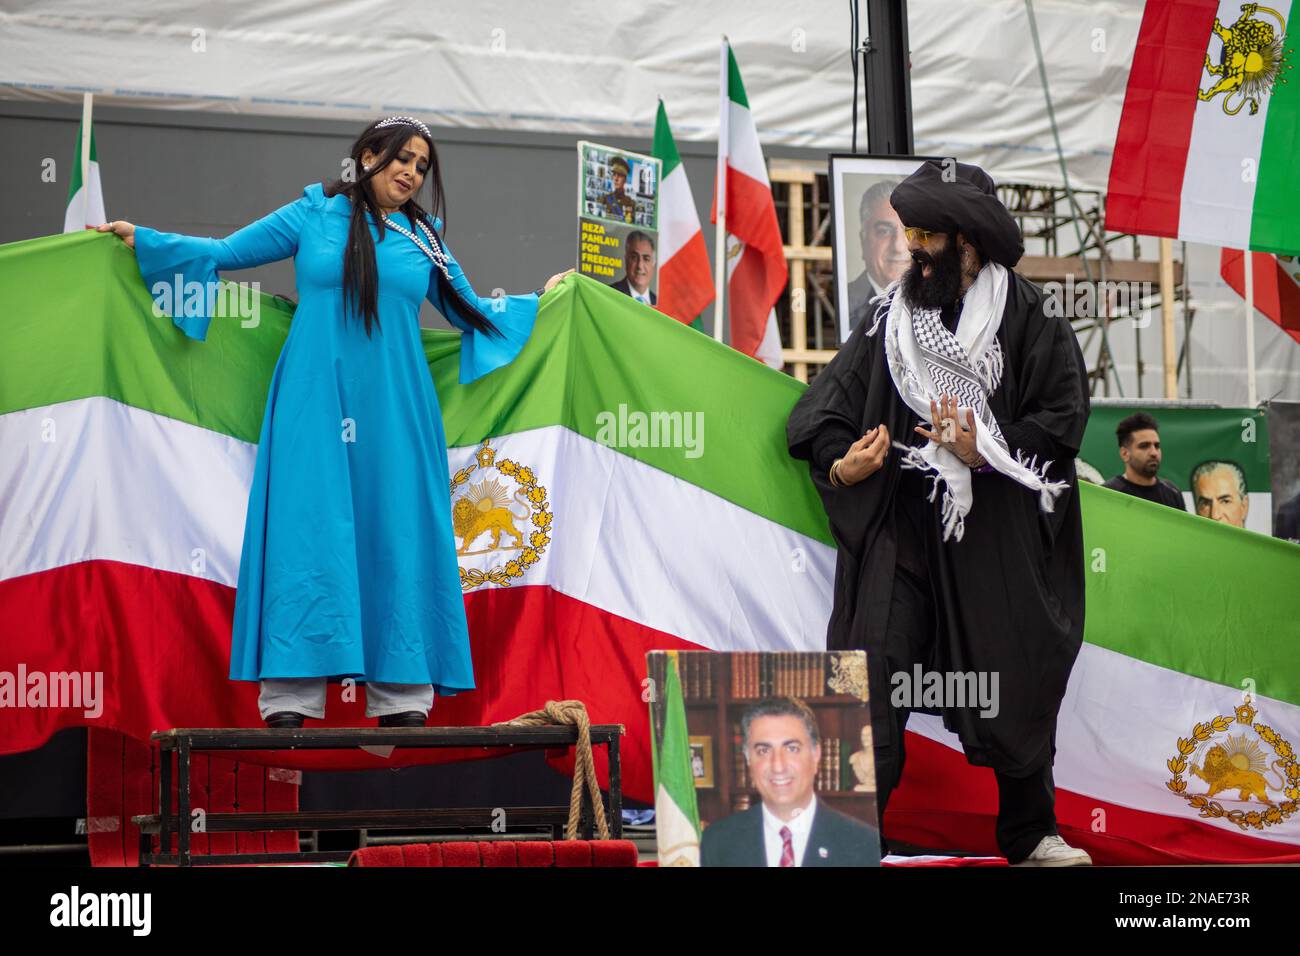 Les manifestants iraniens ont célébré l'anniversaire de la Révolution islamique de 44th, en revendiquant la liberté prise par l'ayatollah d'une jeune fille iranienne. Crédit: Sinai Noor/Alamy Banque D'Images